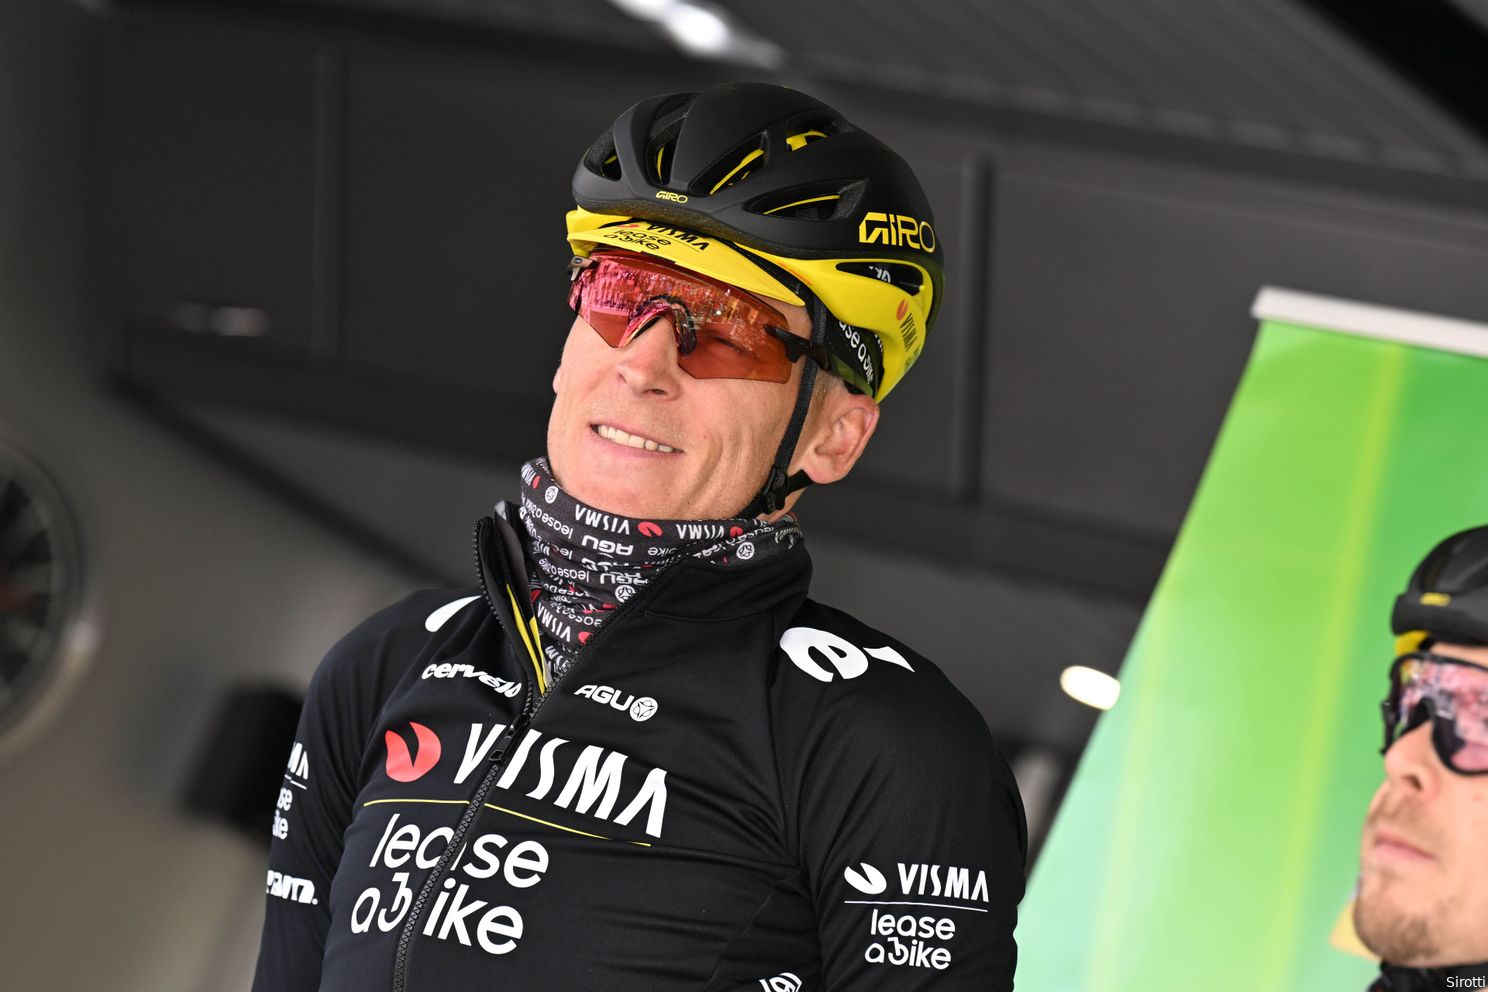 Woorden Gesink voelen na Giro-crash extra zuur, Uijtdebroeks vindt uitvallen mentor 'echt wel klote'